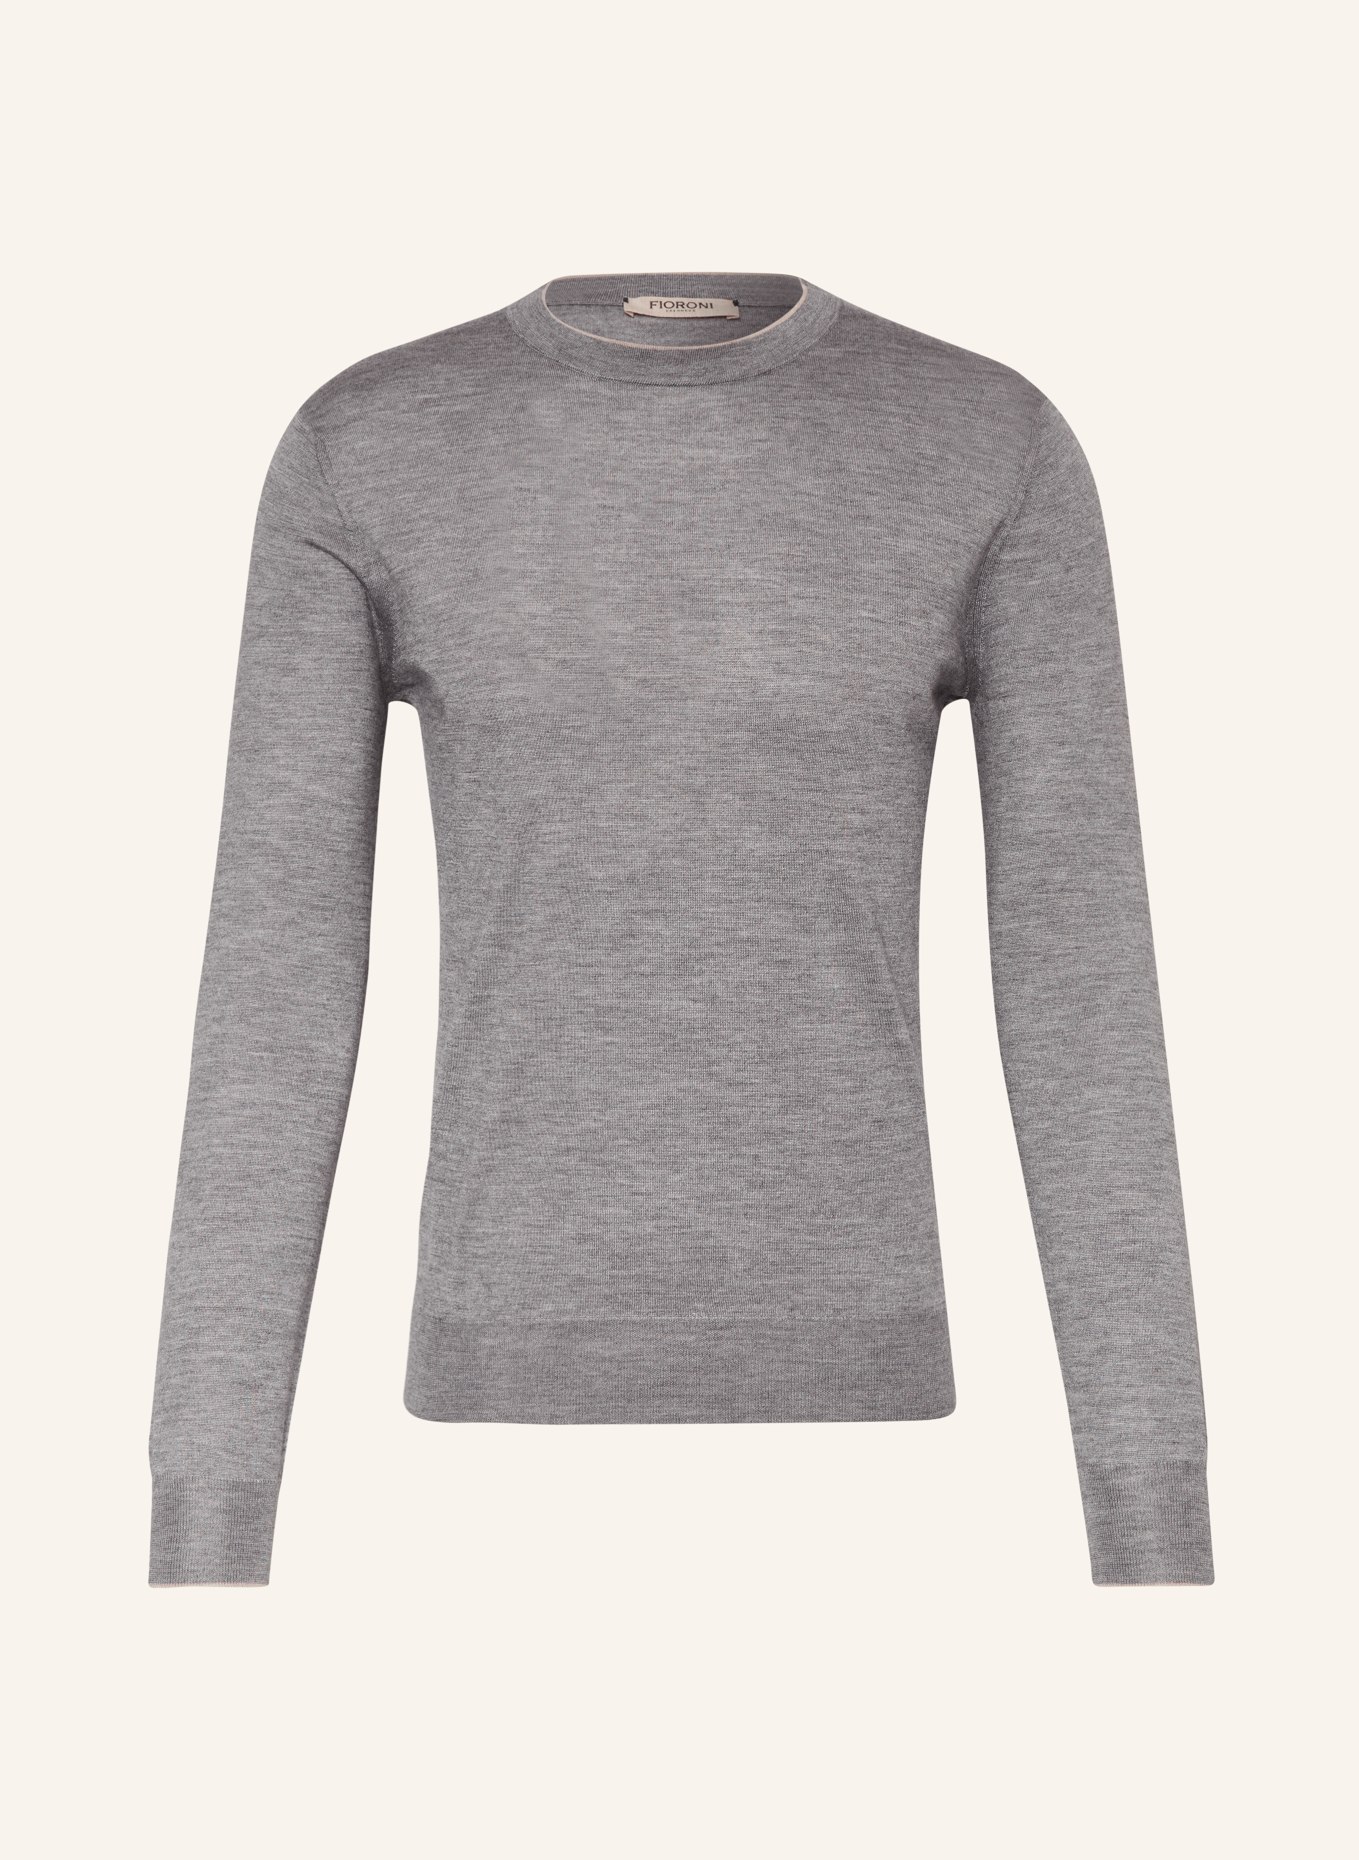 FIORONI Cashmere-Pullover mit Seide, Farbe: GRAU (Bild 1)